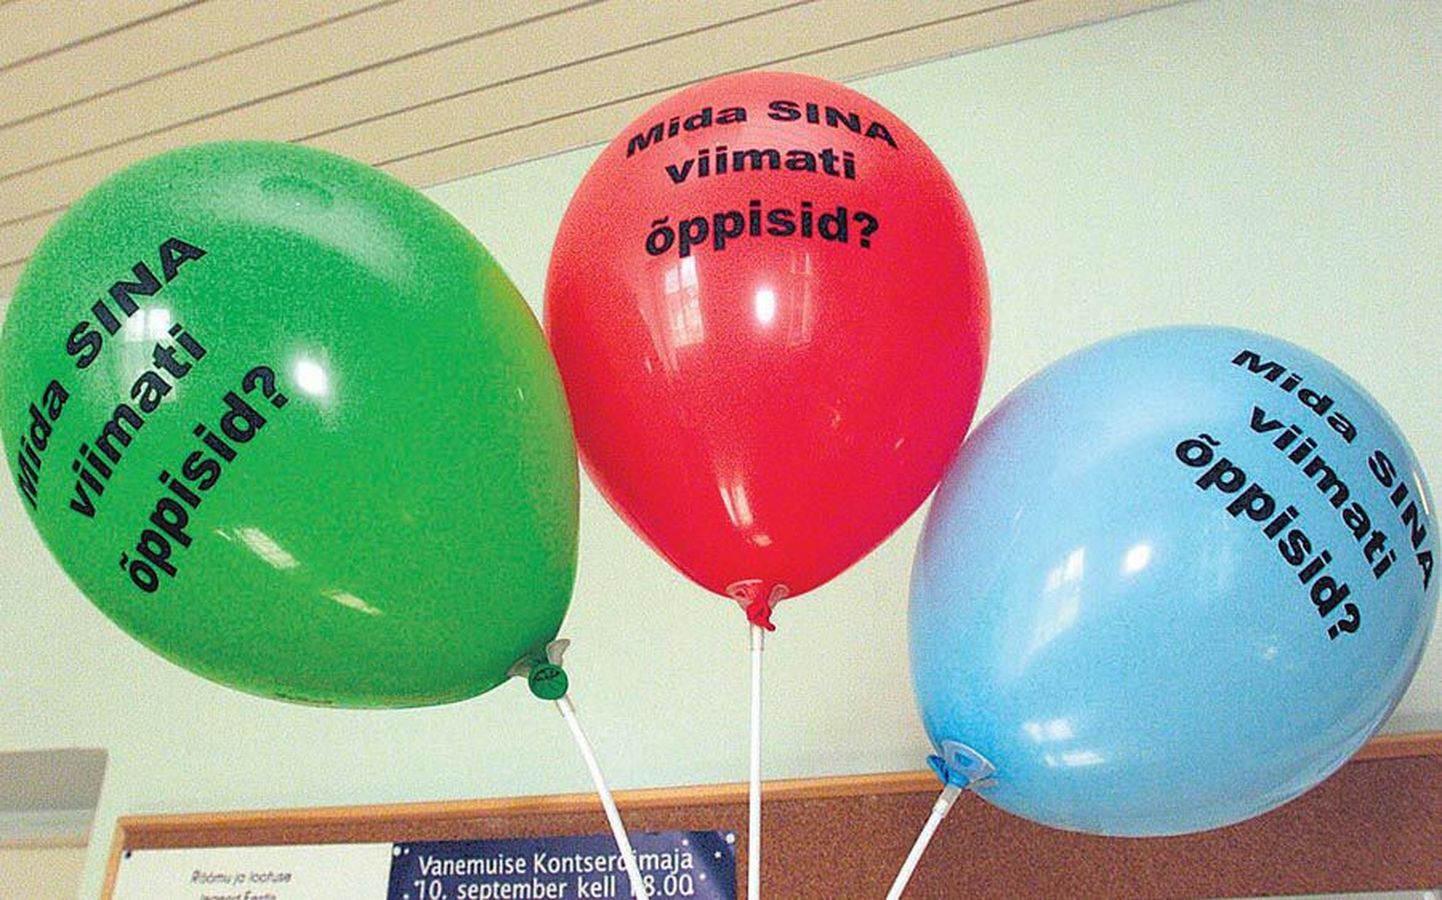 Täiskasvanute õppima ergutamiseks on viimaste aastate jooksul Eestis korraldatud mitmesuguseid kampaaniaid ja üritusi. Mõnel neist on osalejate
rõõmustamiseks jagatud teemakohaseid õhupalle.